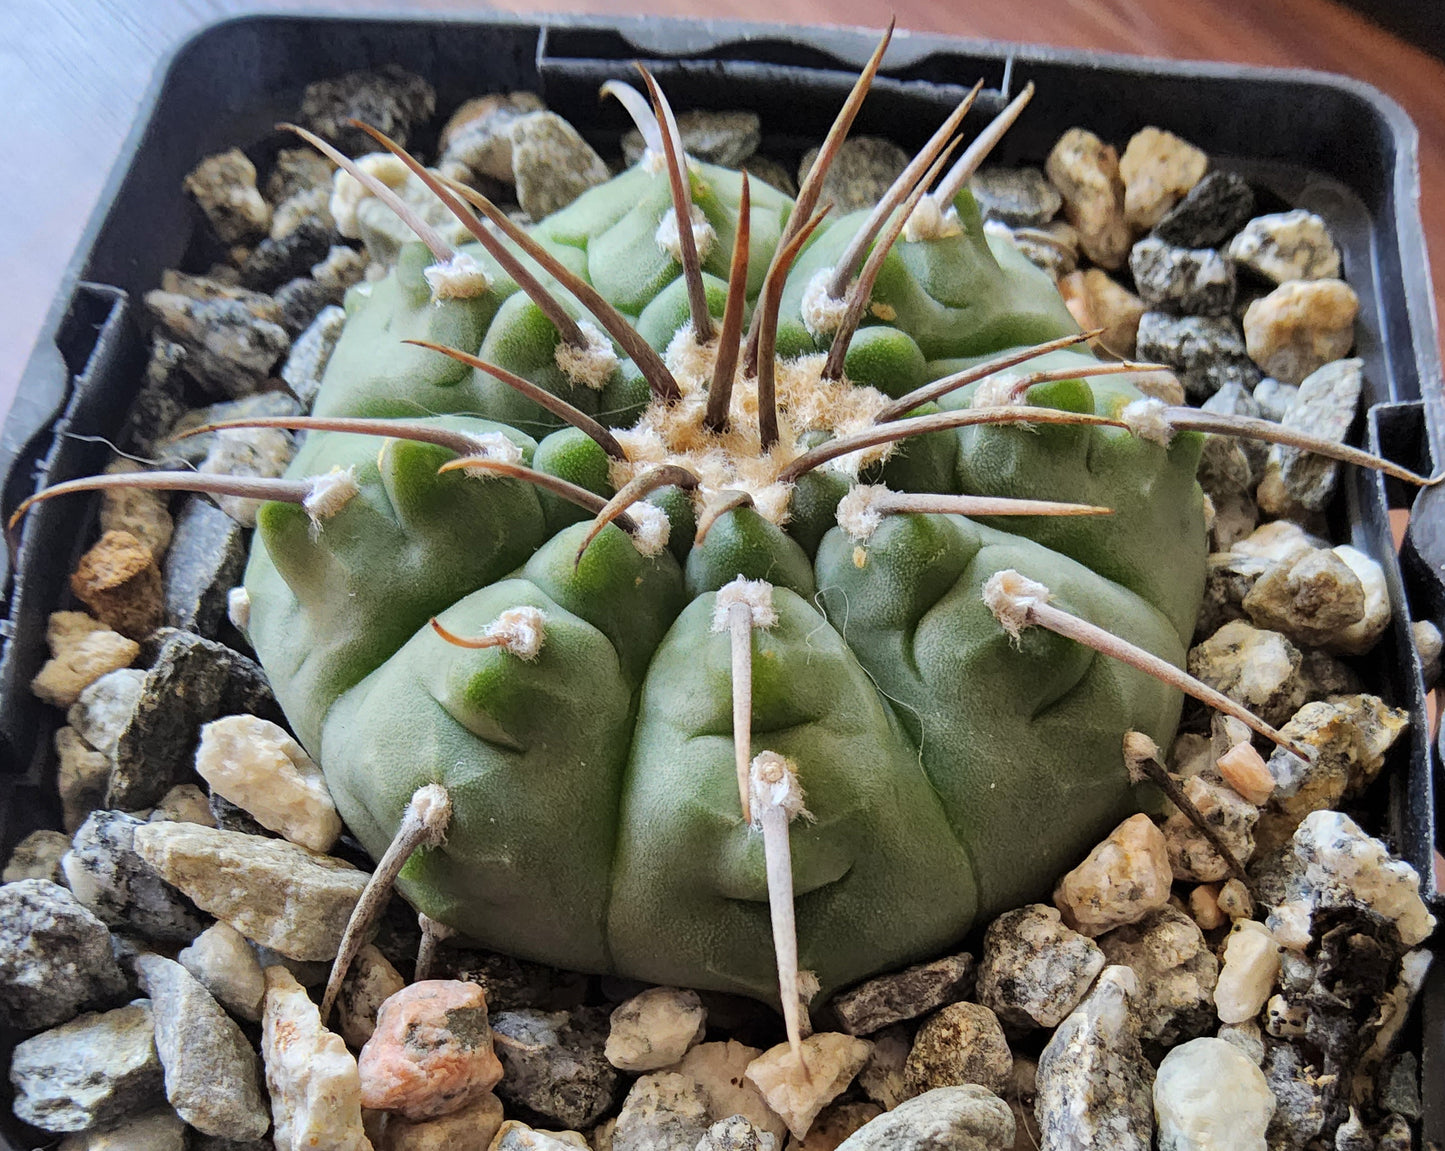 Gymnocalycium vatteri var. paucispinum Live Cactus Growing in 4 Inch